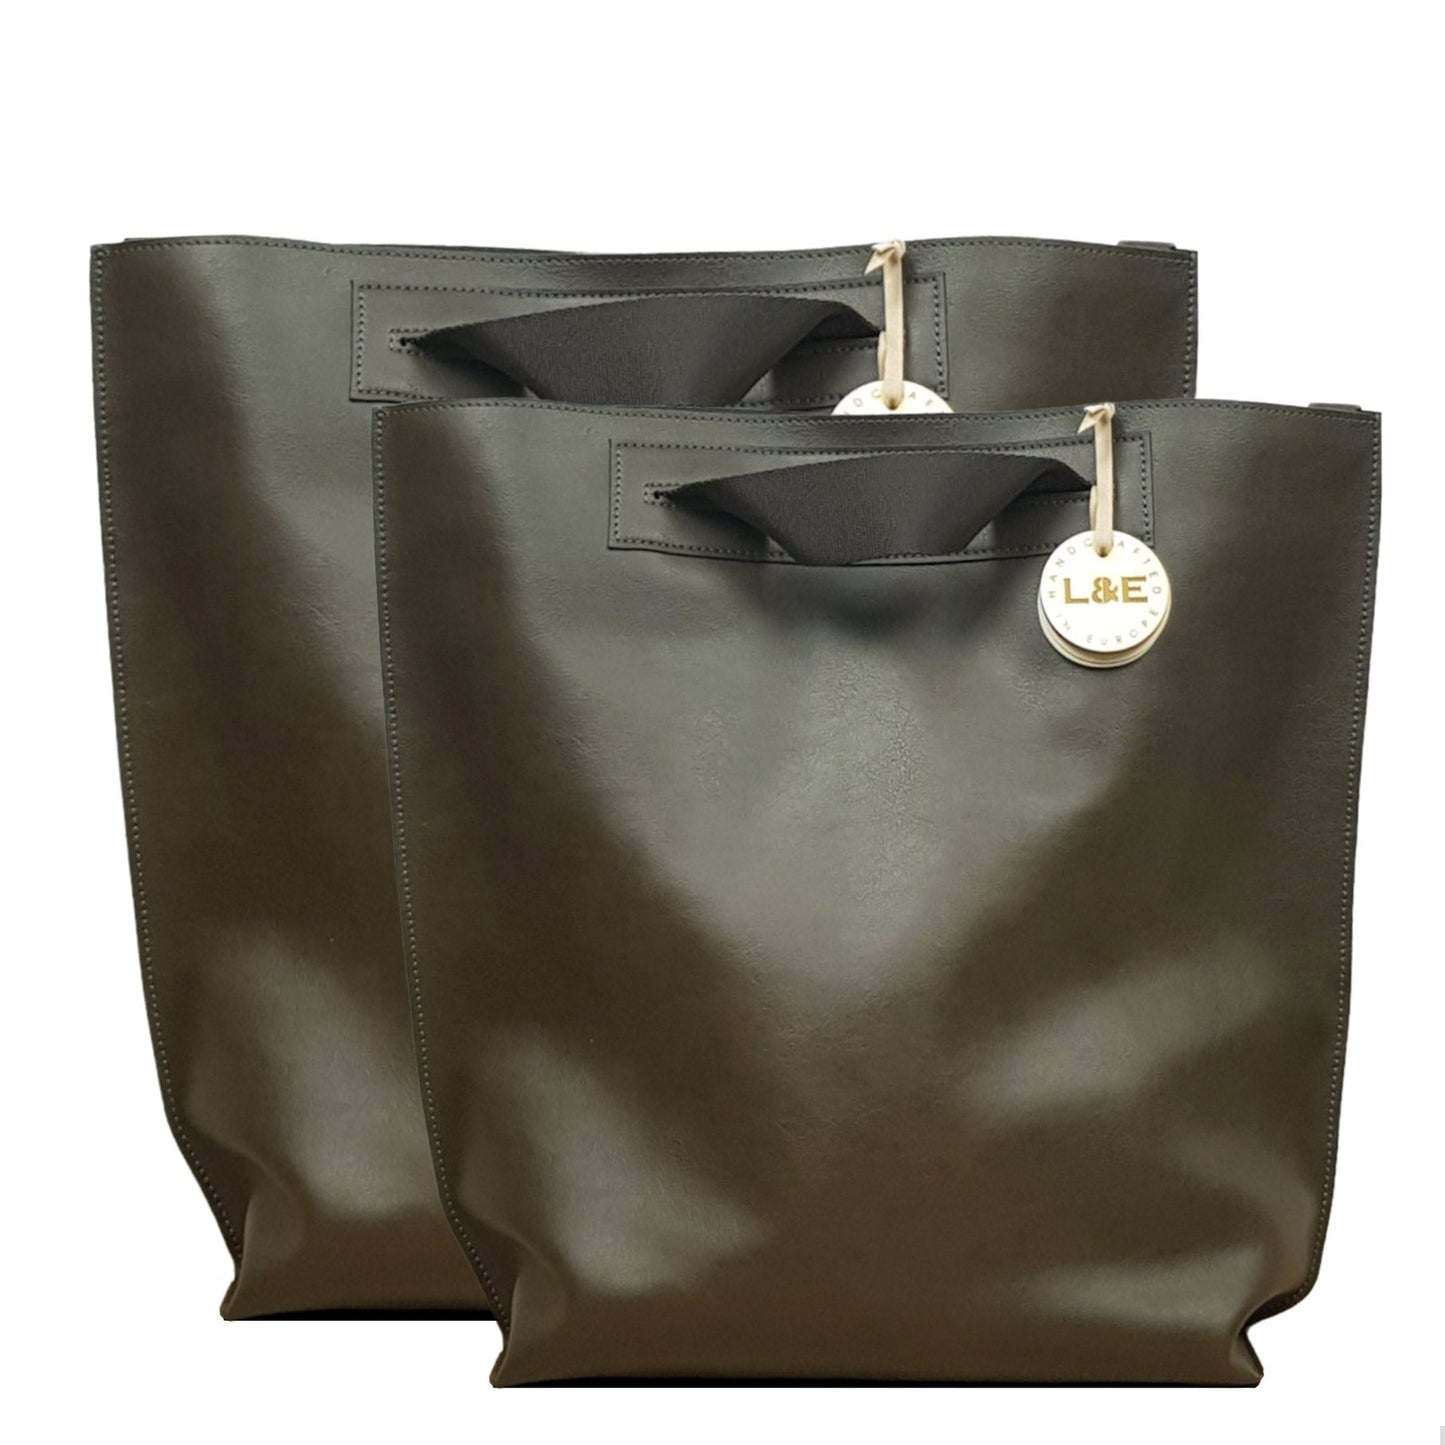 ZüriBag - Premium Tote Bag from L&E Studio